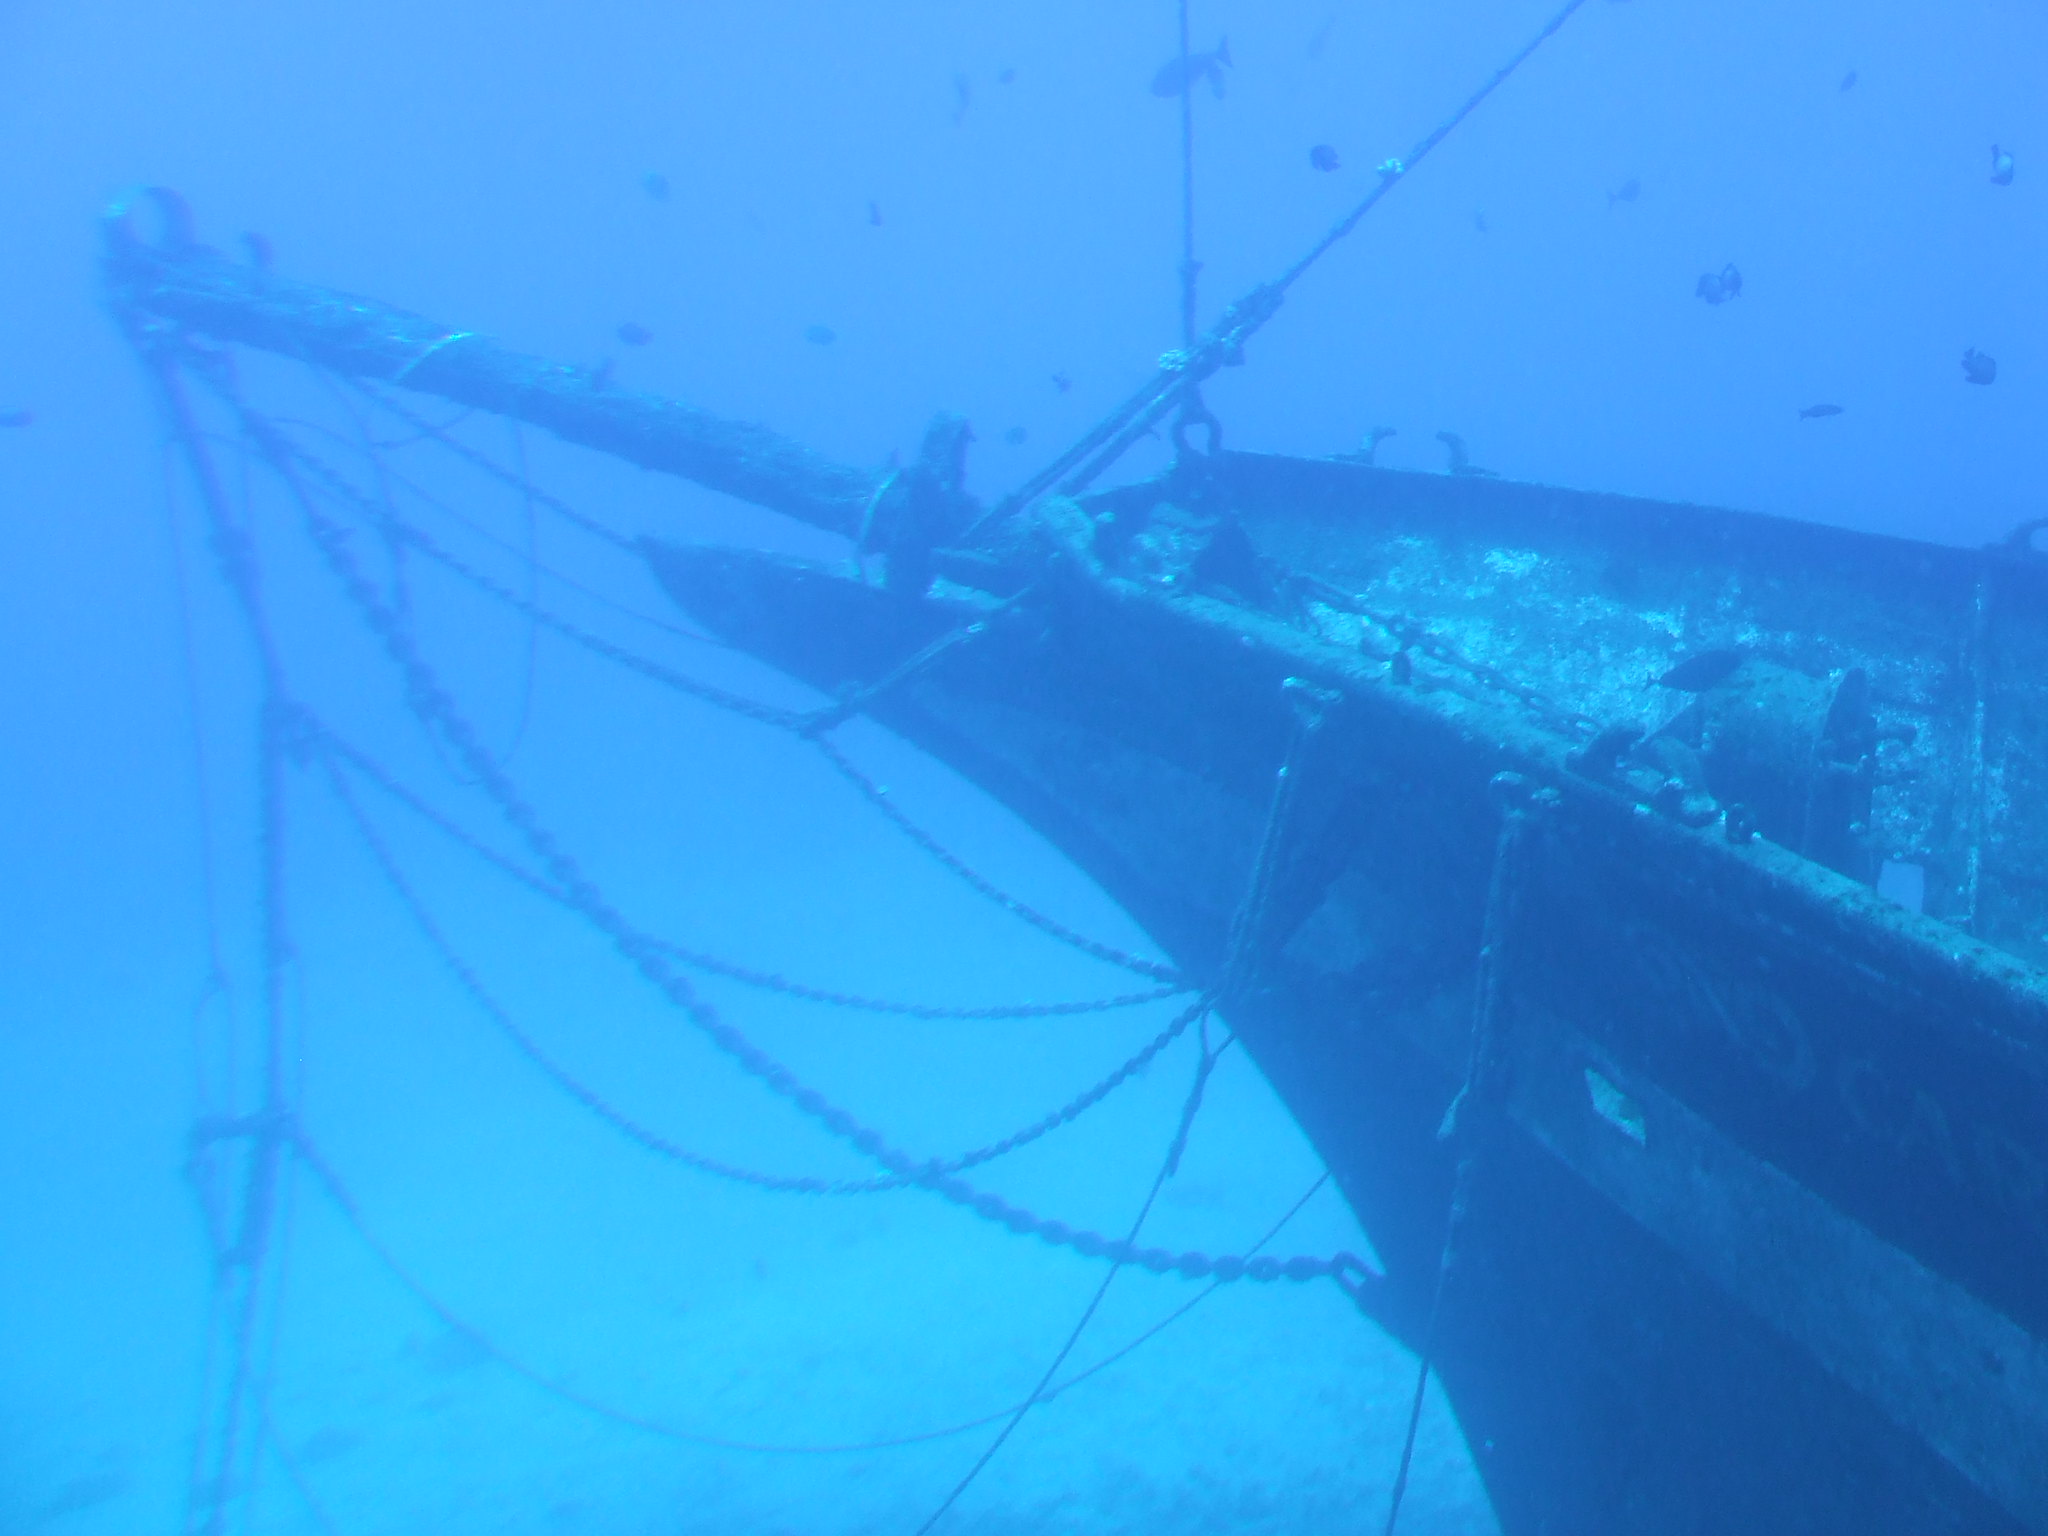 Trinidad shipwreck underwater